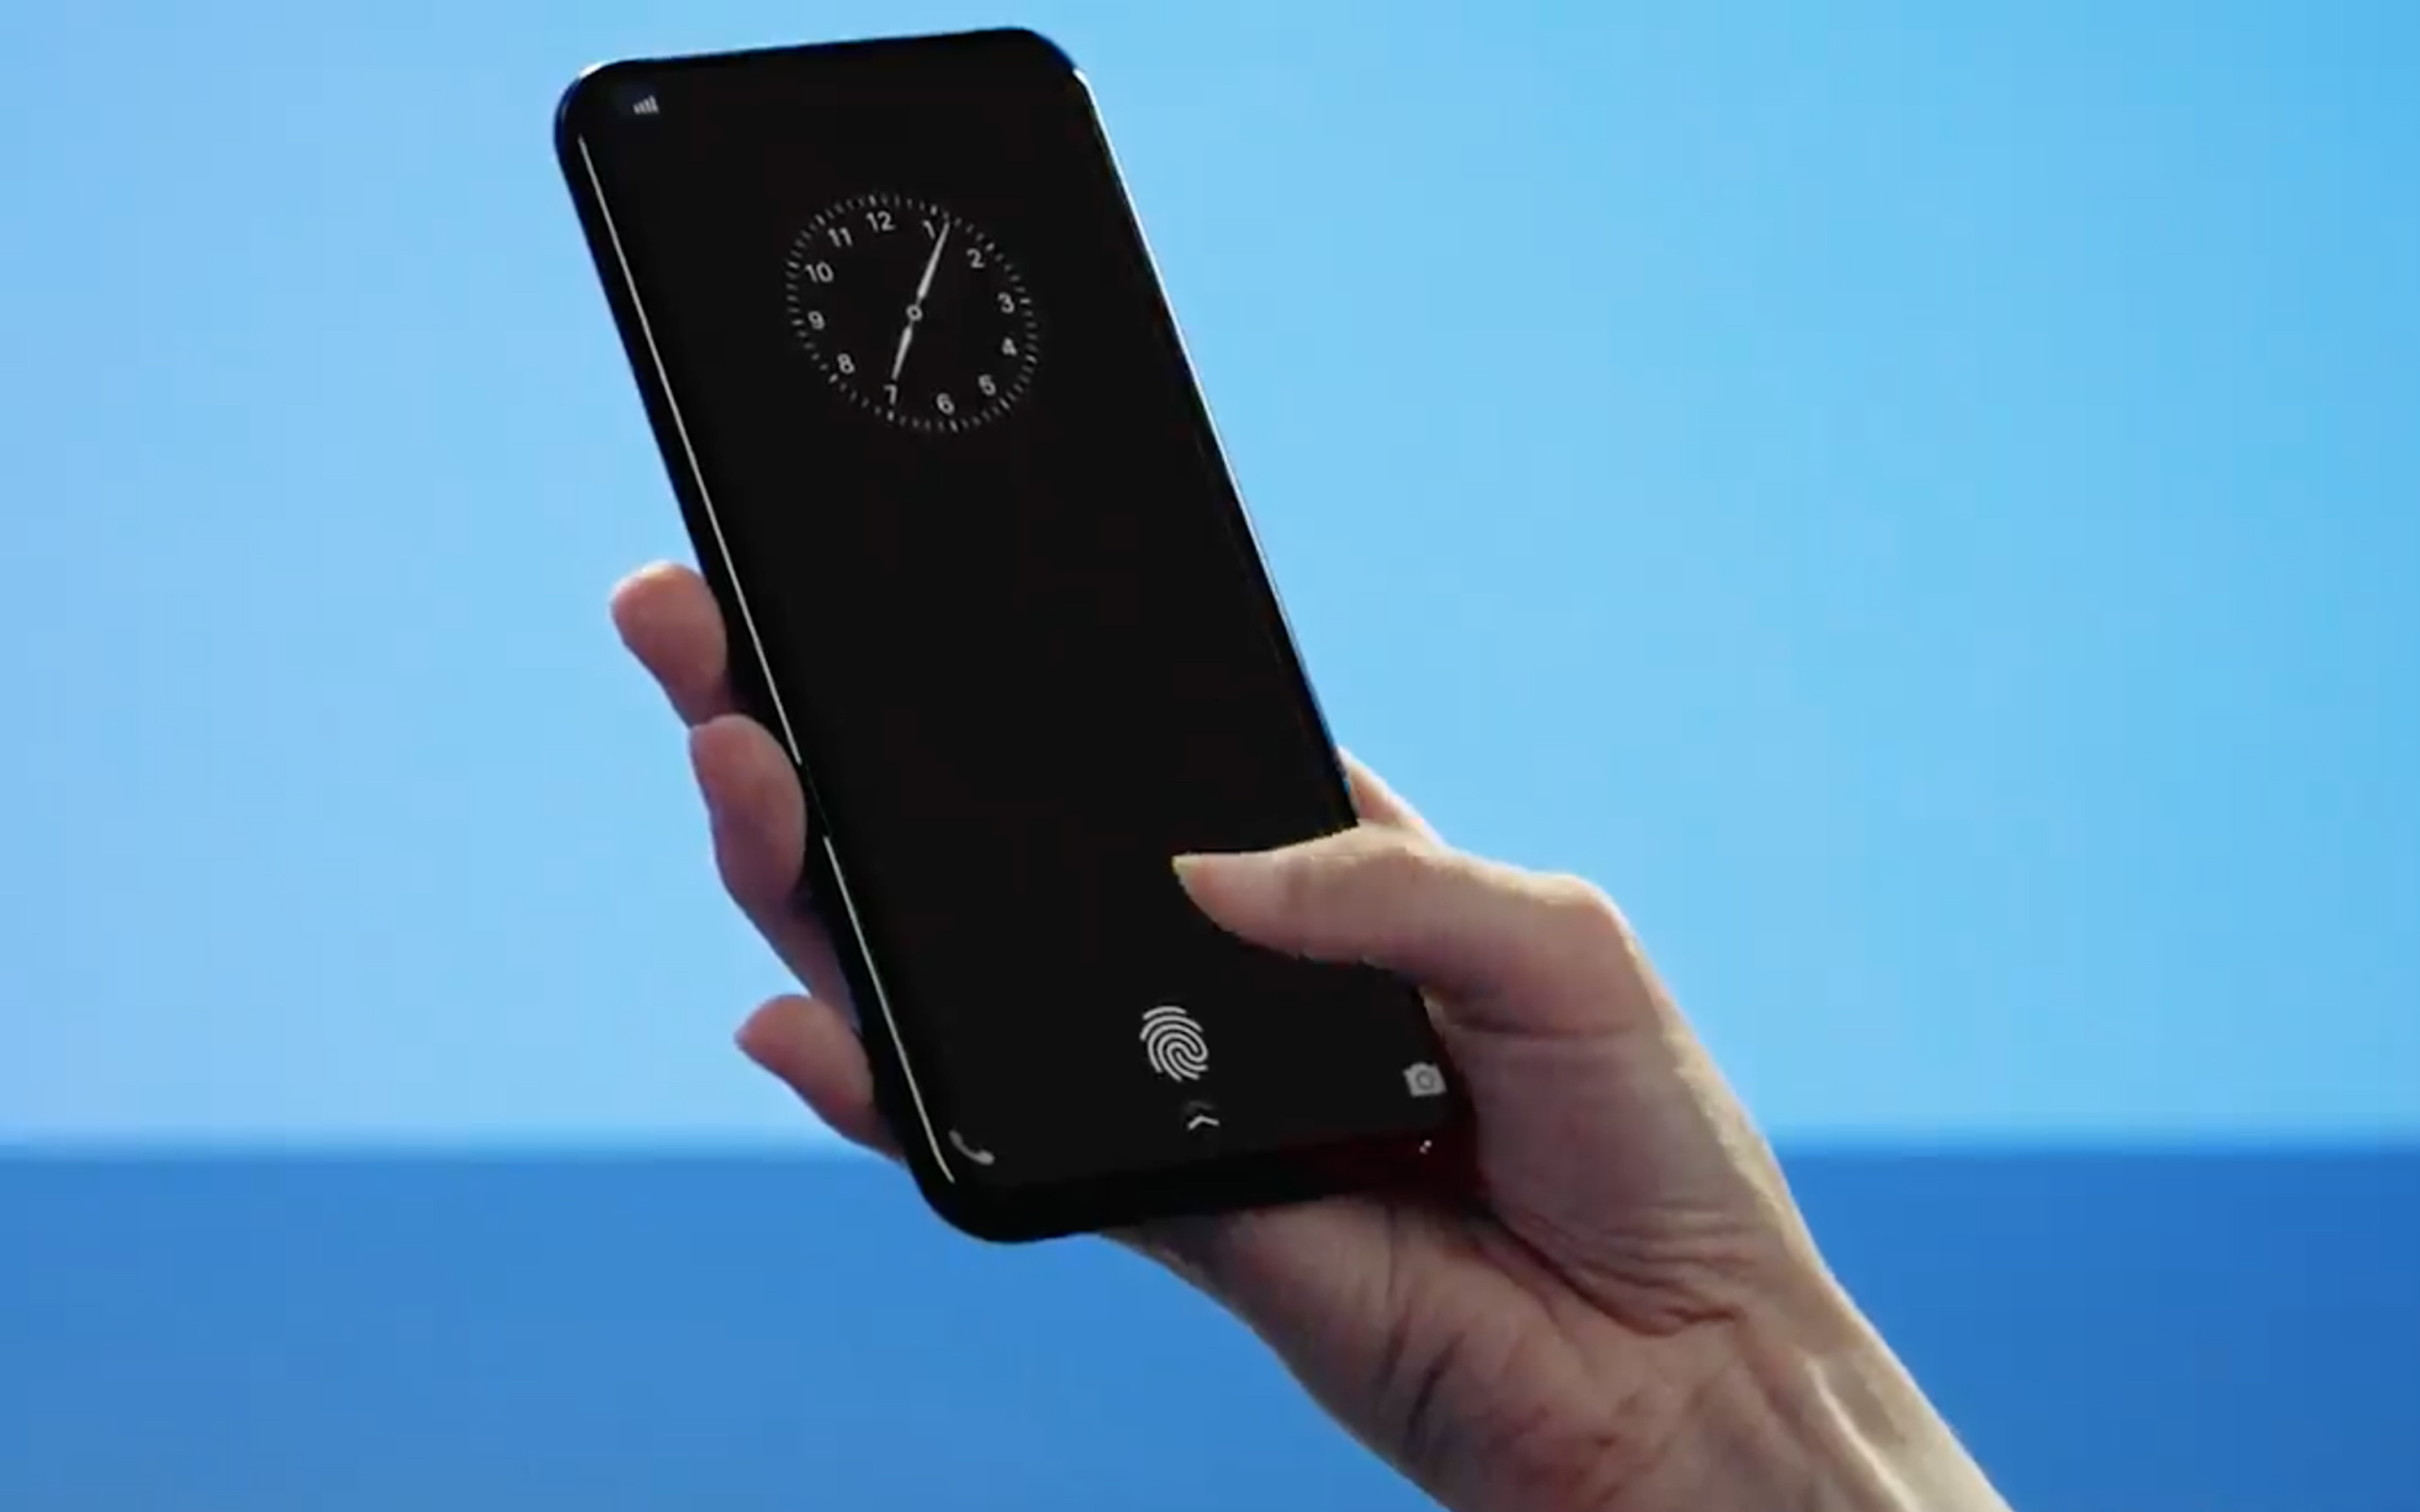 فيفو تطرح هاتف vivo X20 Plus رسميًا بالأسواق مع مستشعر بصمة مدمج في الشاشة